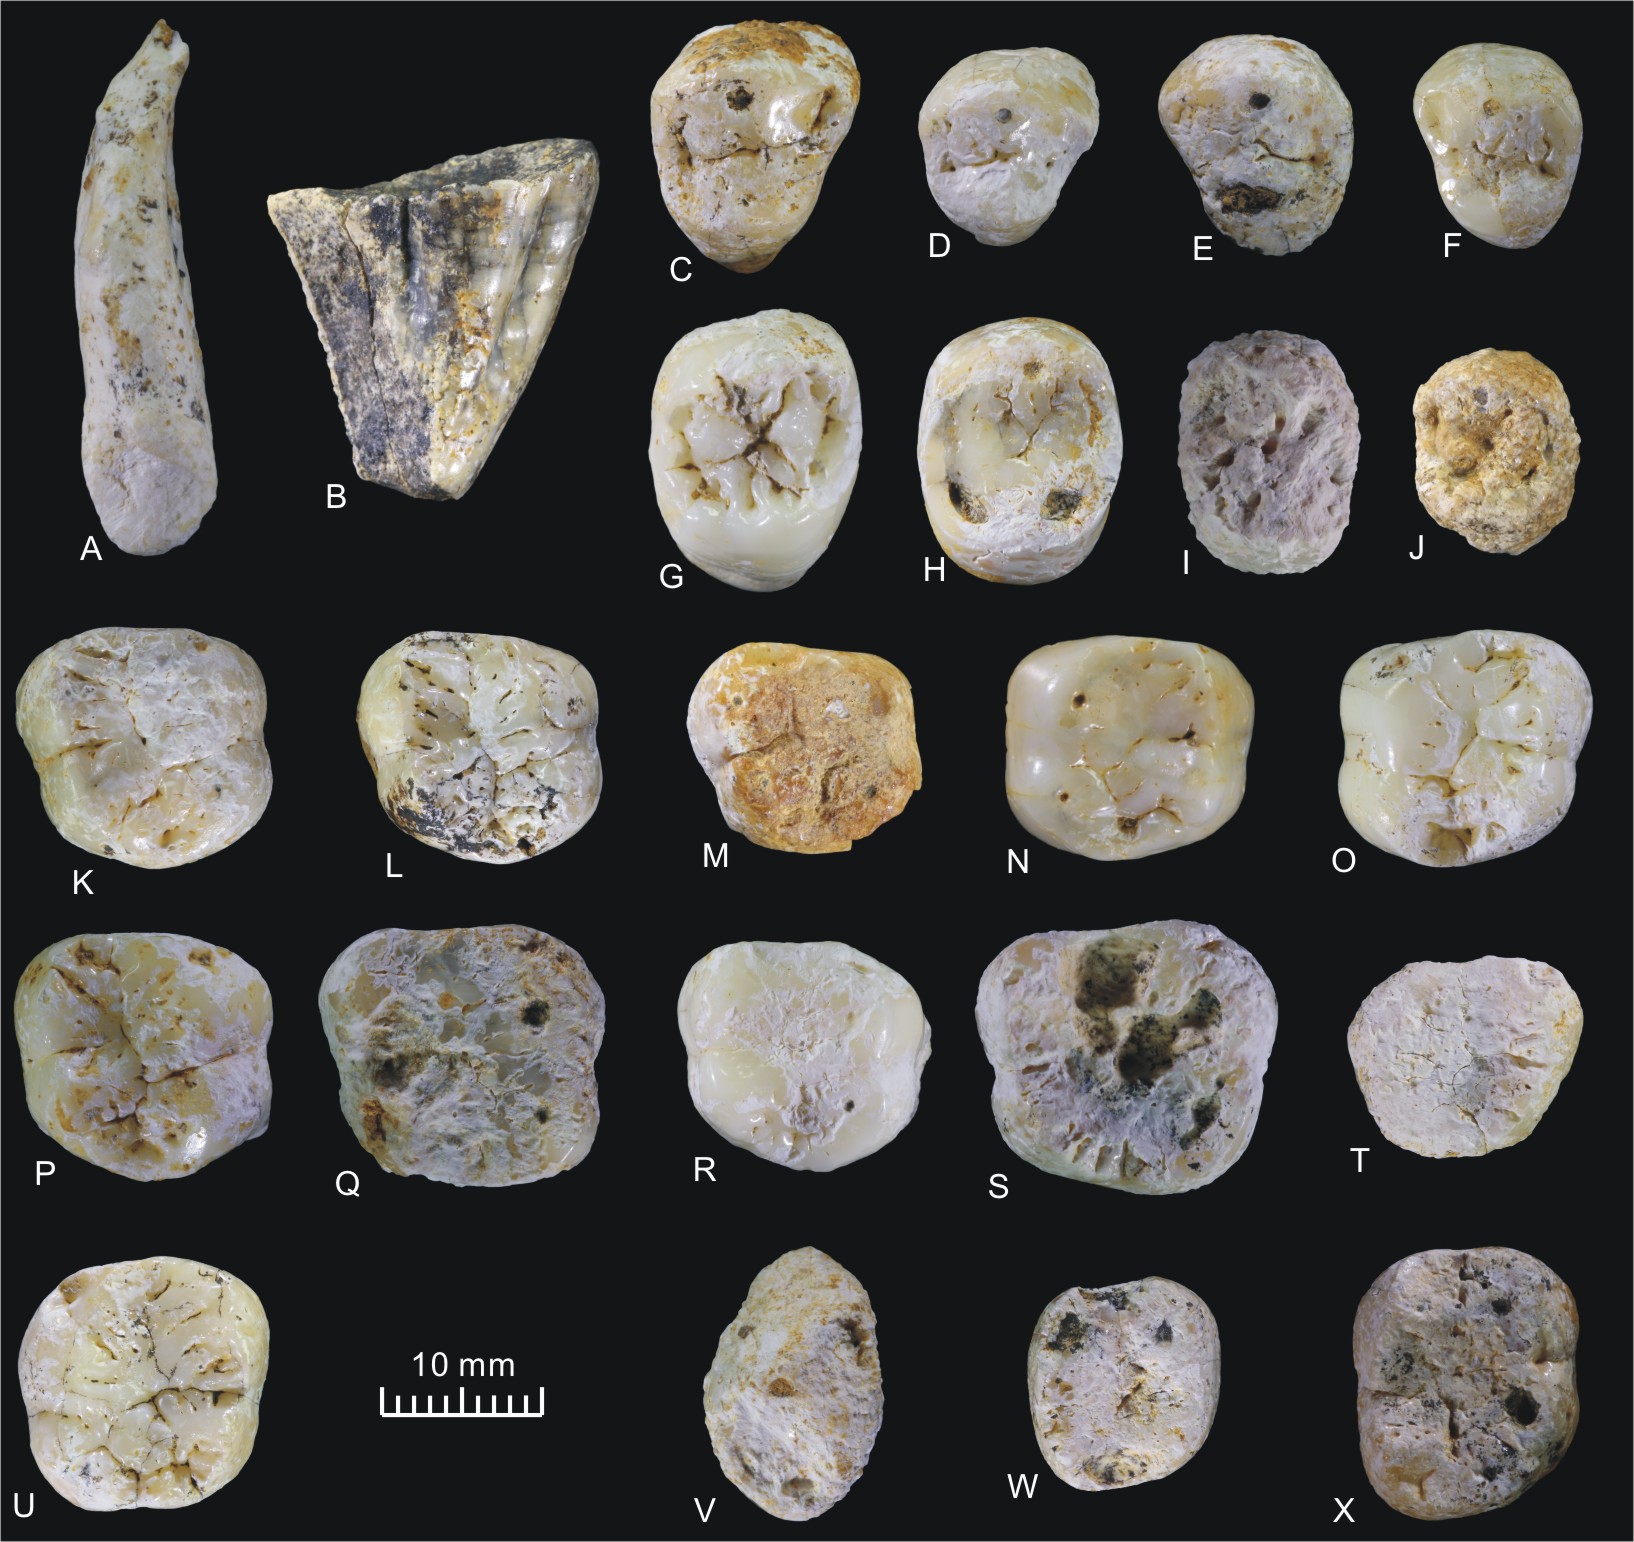 东非发现最古老人属化石LD 350-1 或改写人类进化史 - 化石网